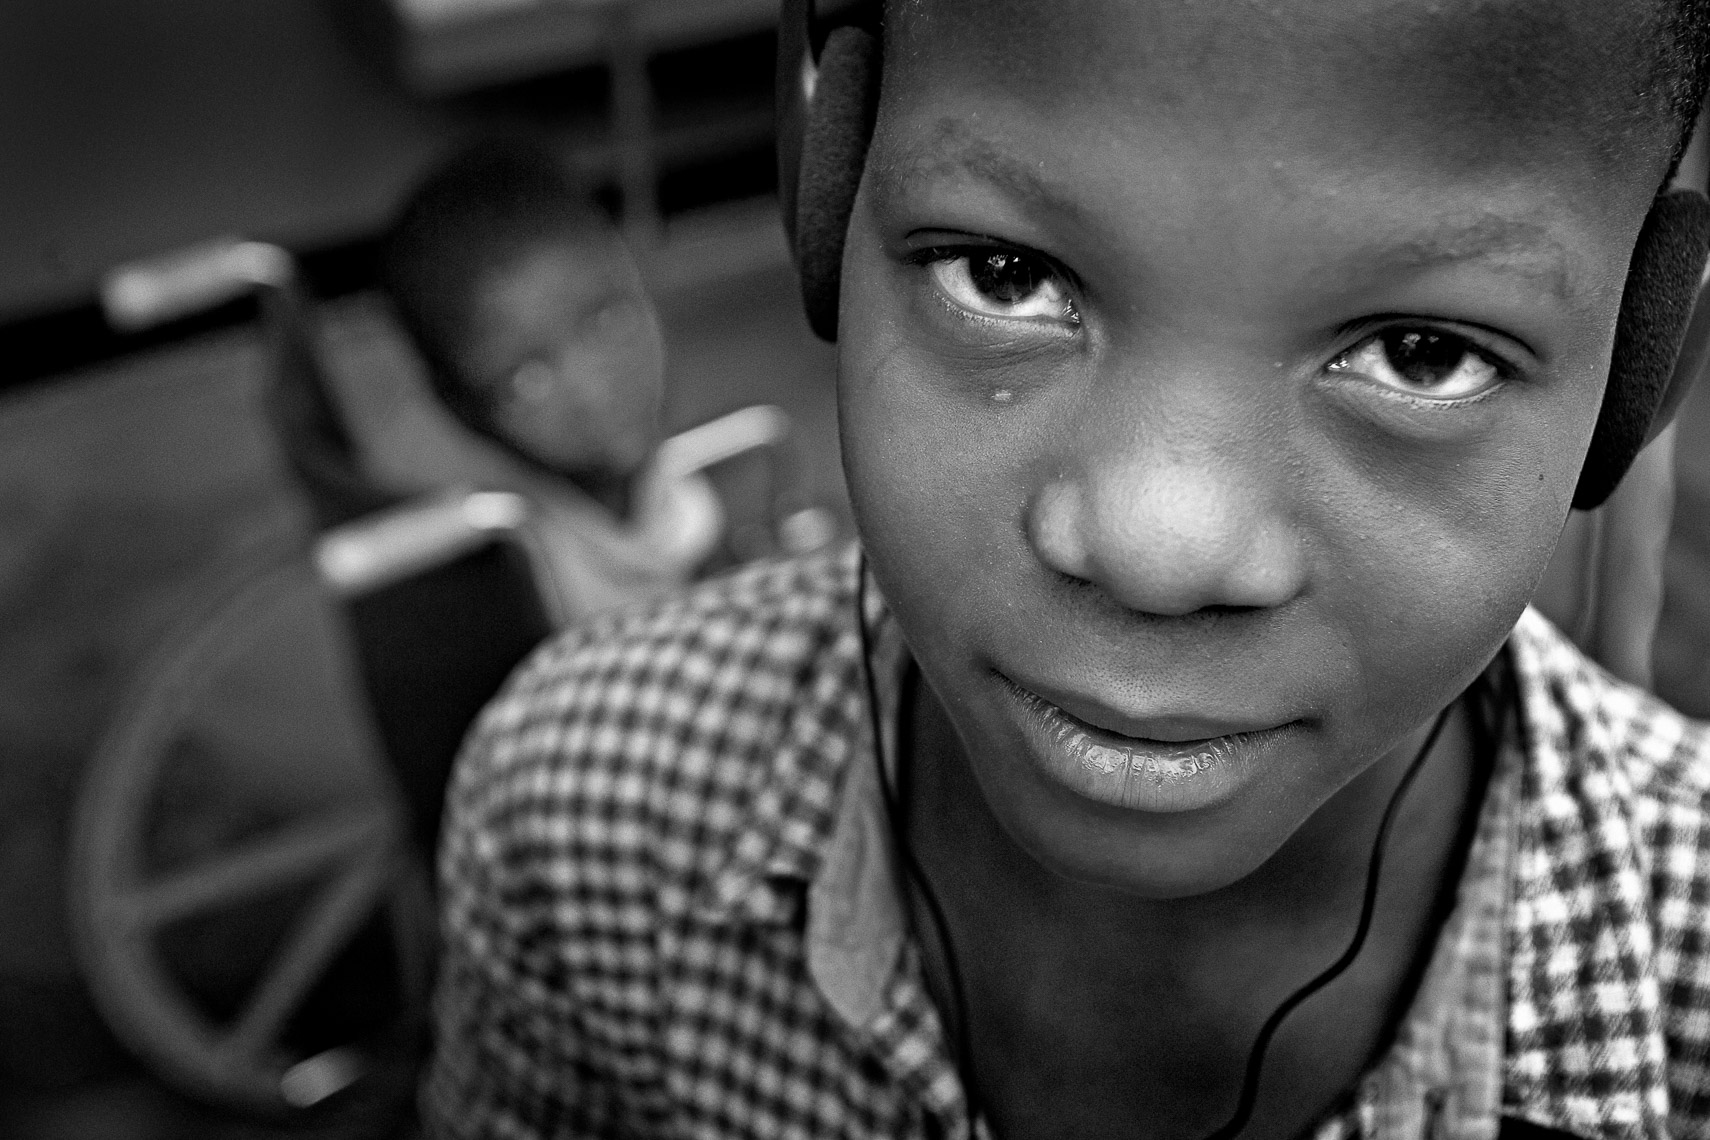 tuberculosis victim patient house of hope orphanage la pointe port de paix haiti